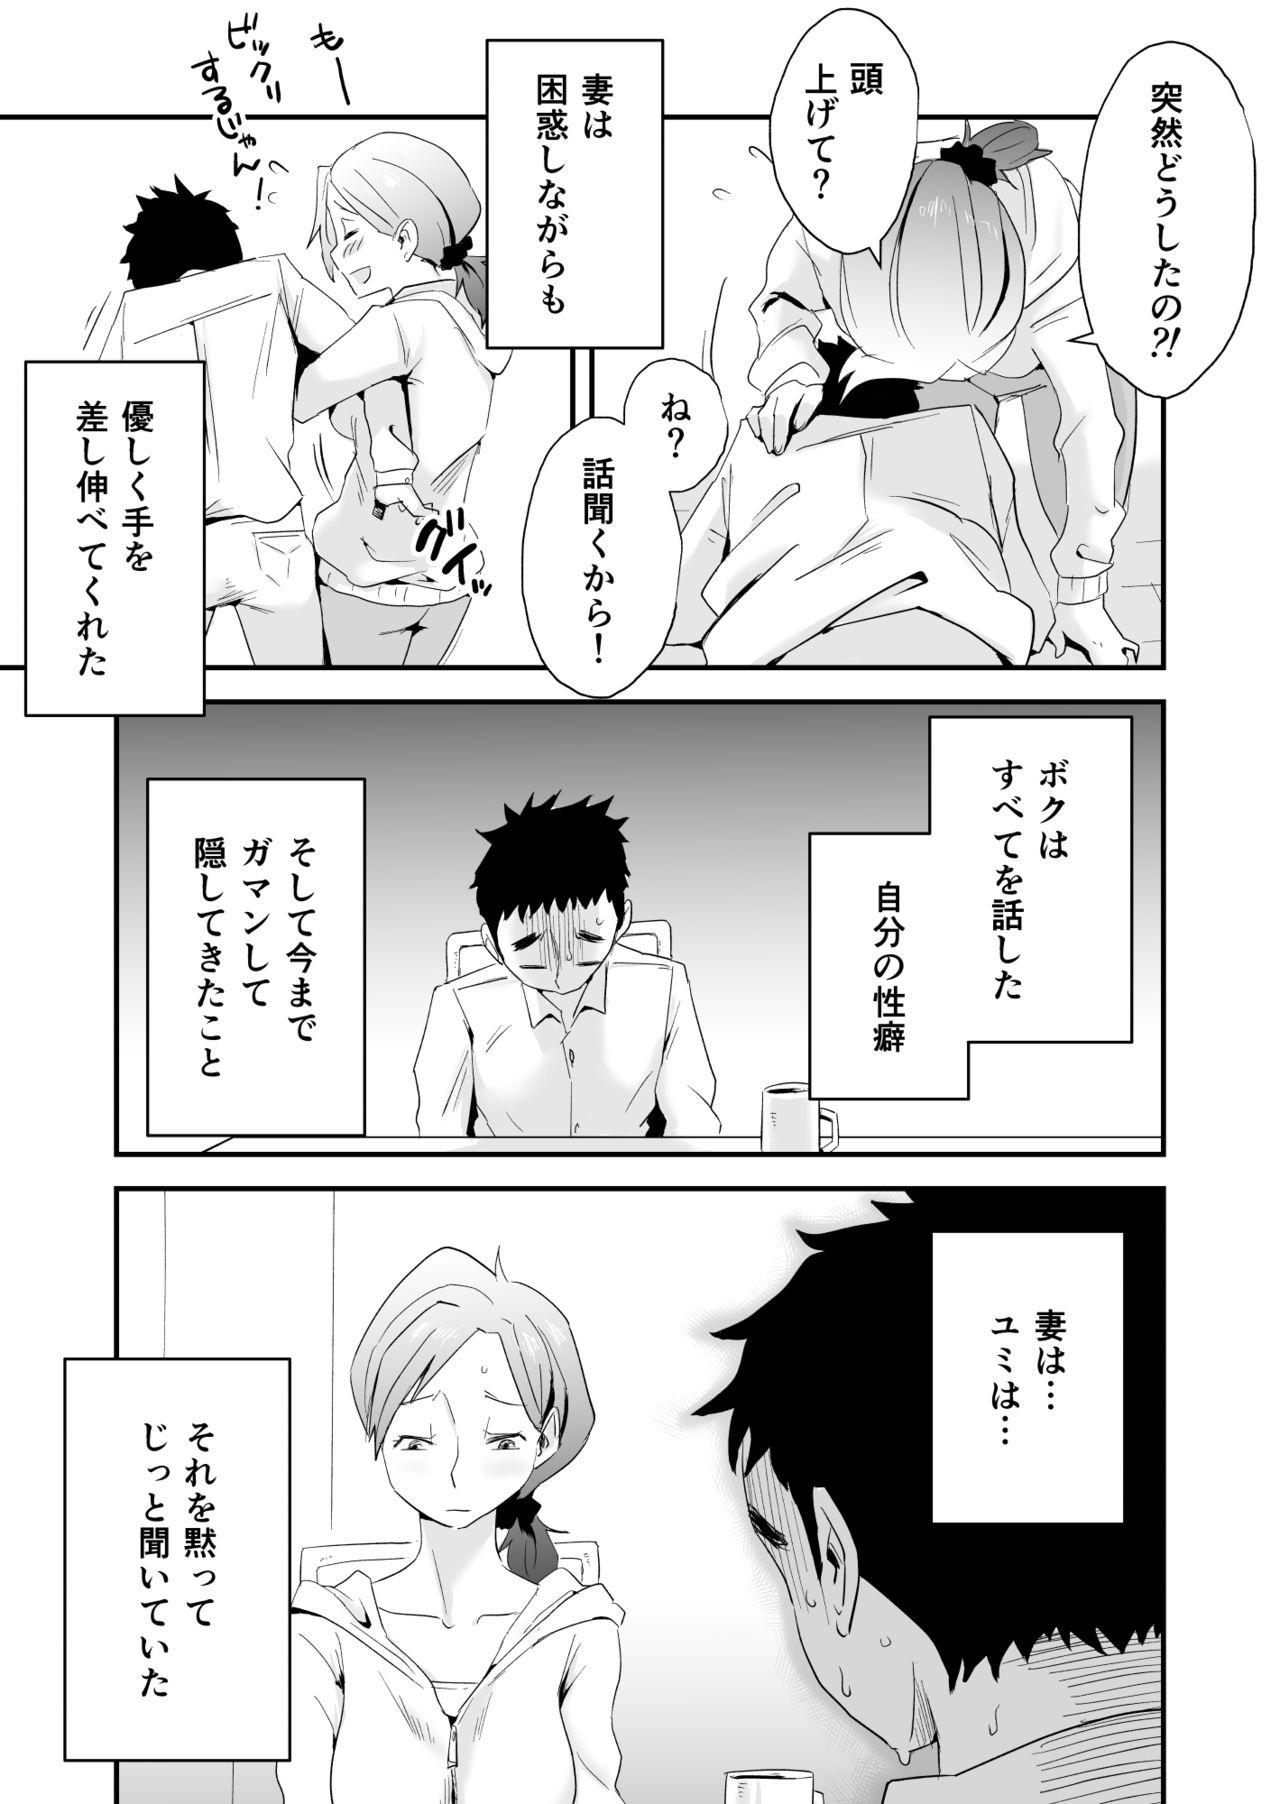 Gayfuck Anata no Nozomi vol. 1 Hunks - Page 4